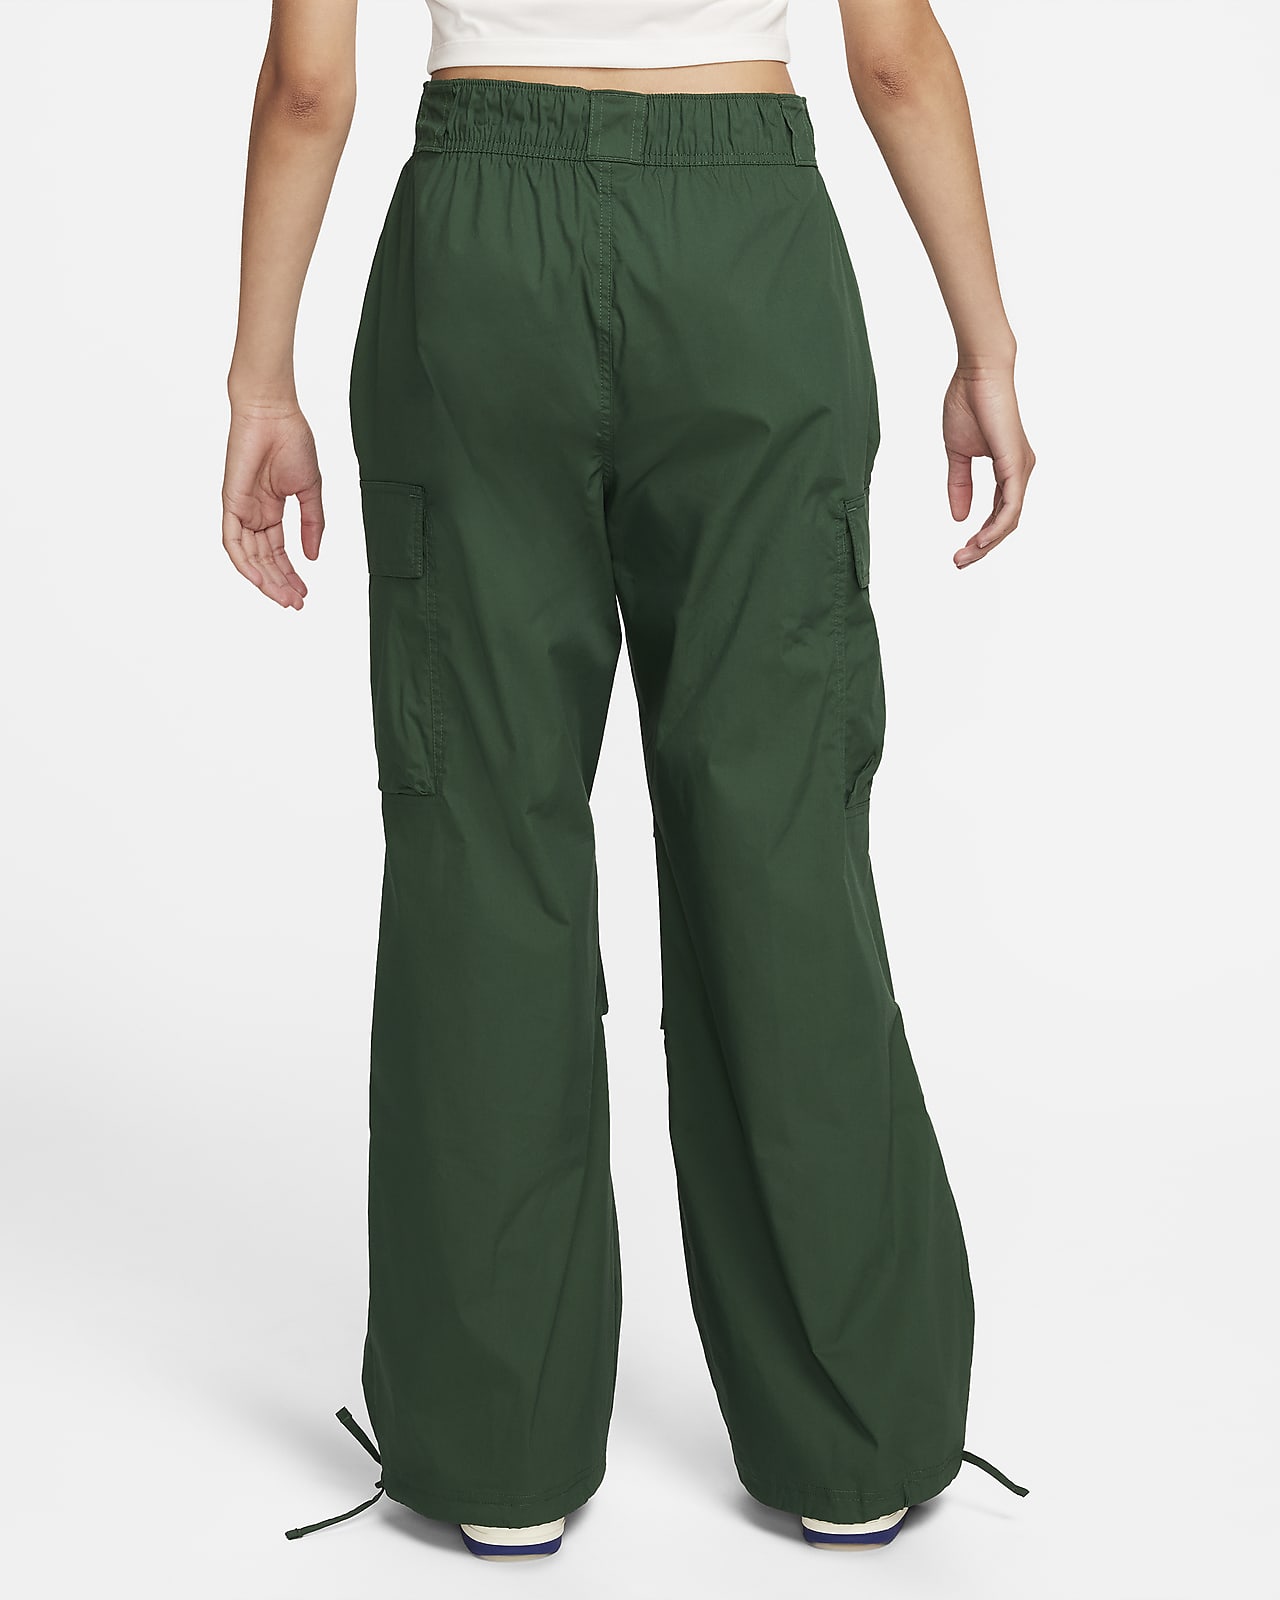 Nike Sportswear Pantalón cargo de tejido Woven y talle alto con ajuste  holgado - Mujer. Nike ES